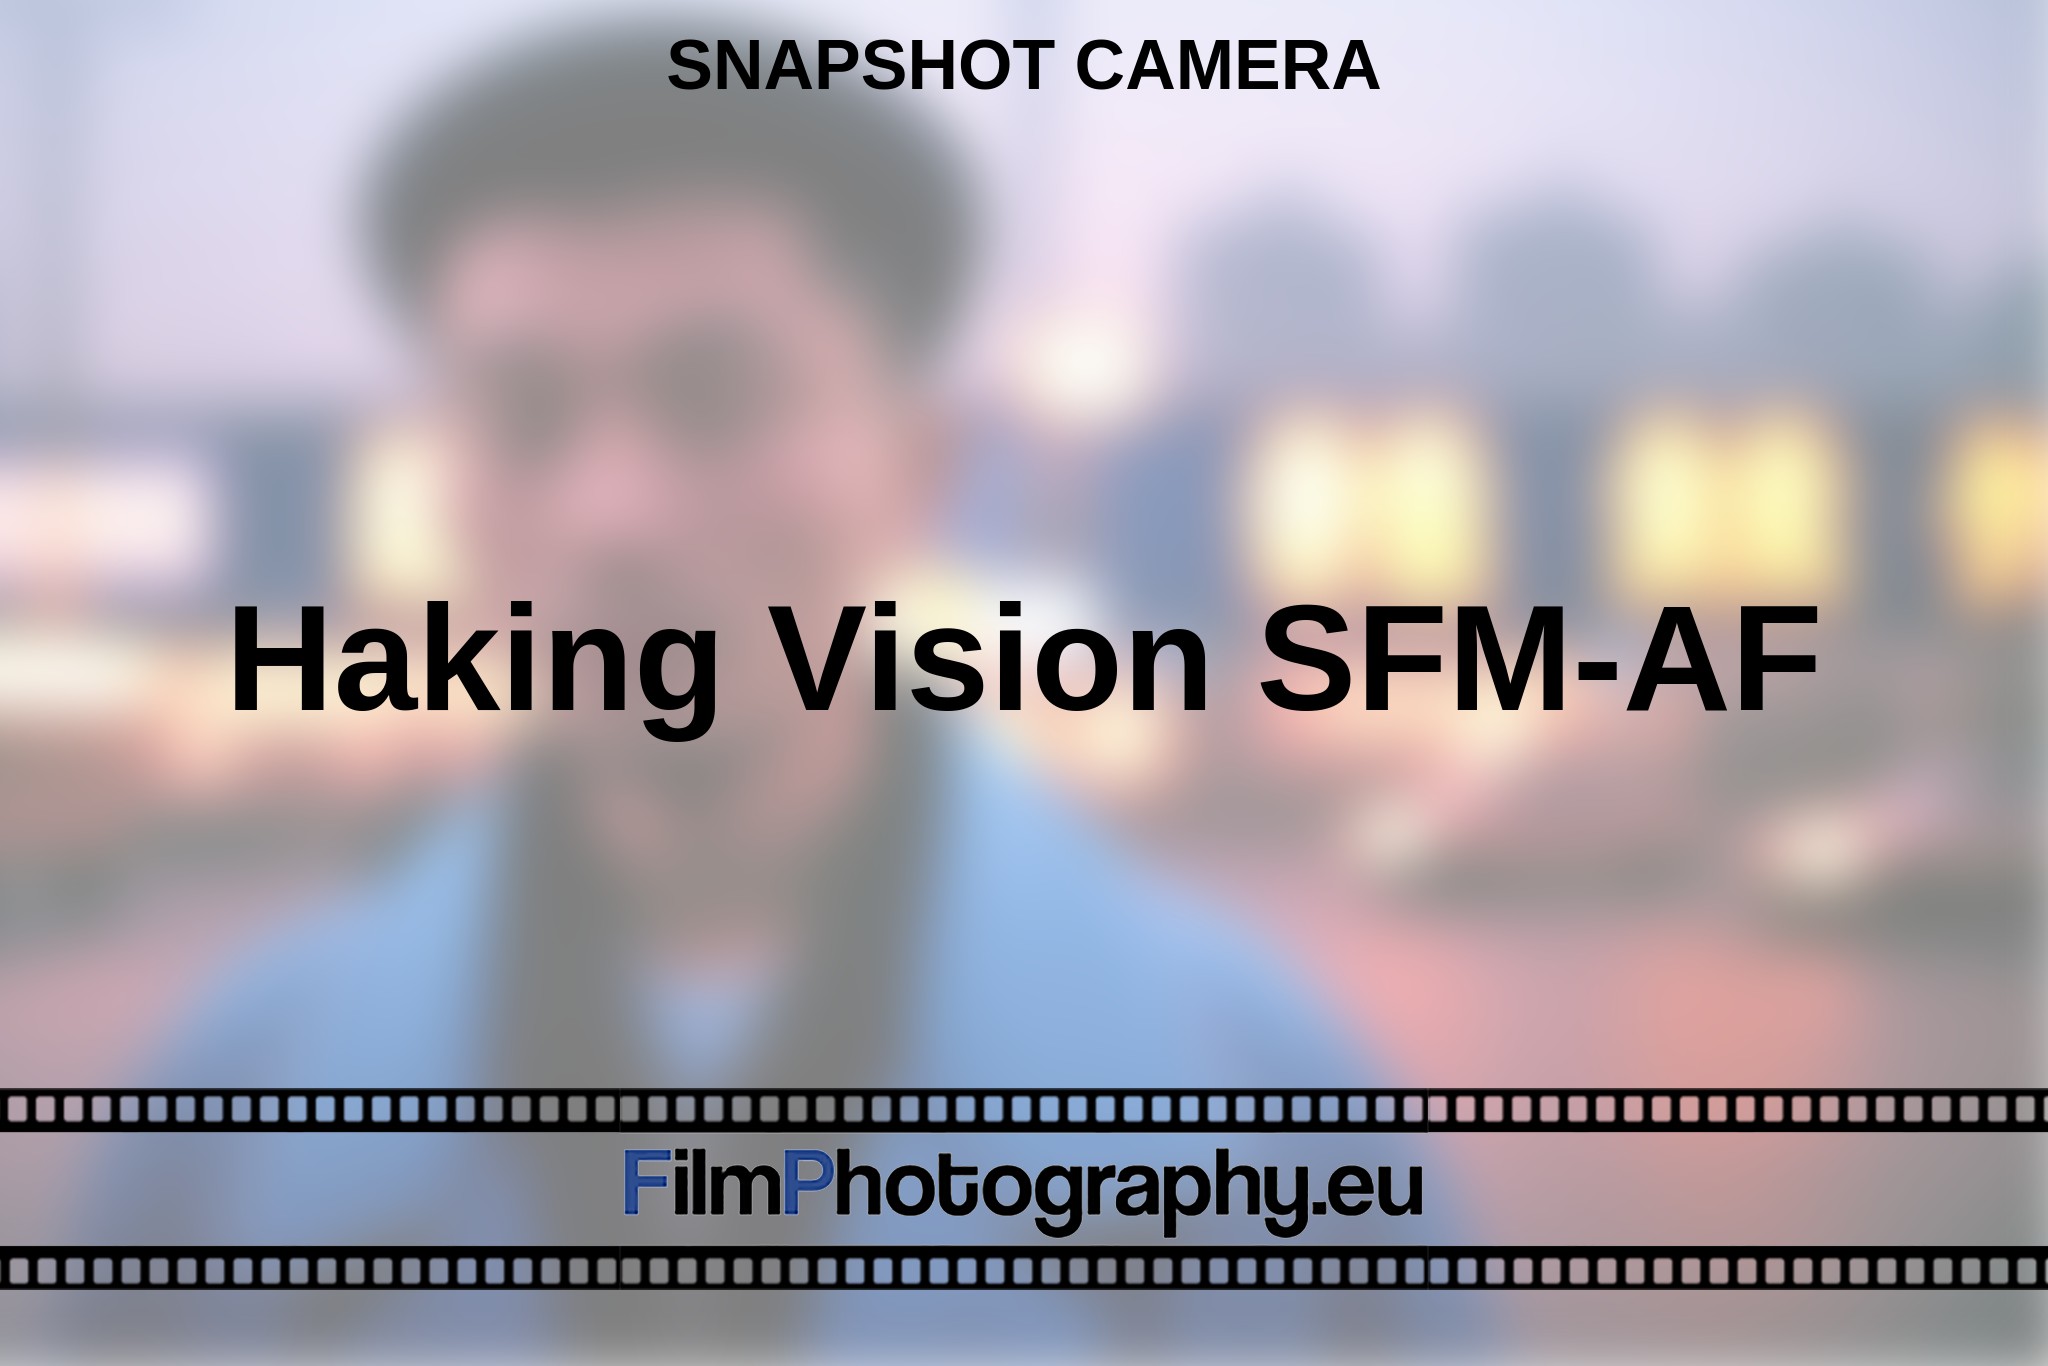 haking-vision-sfm-af-snapshot-camera-en-bnv.jpg